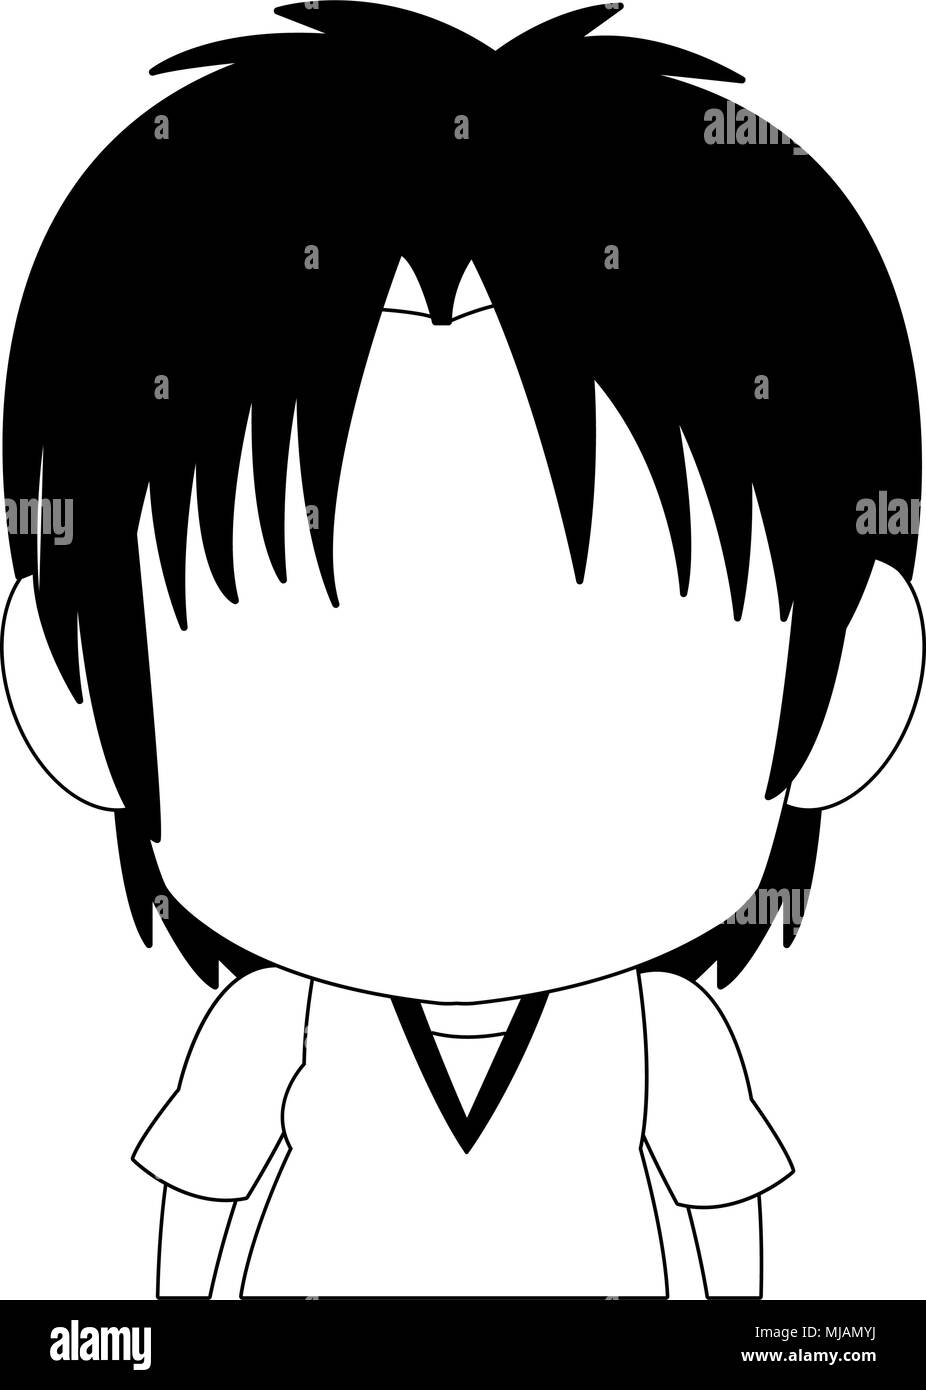 Anime style boy icon Imágenes de stock en blanco y negro - Alamy